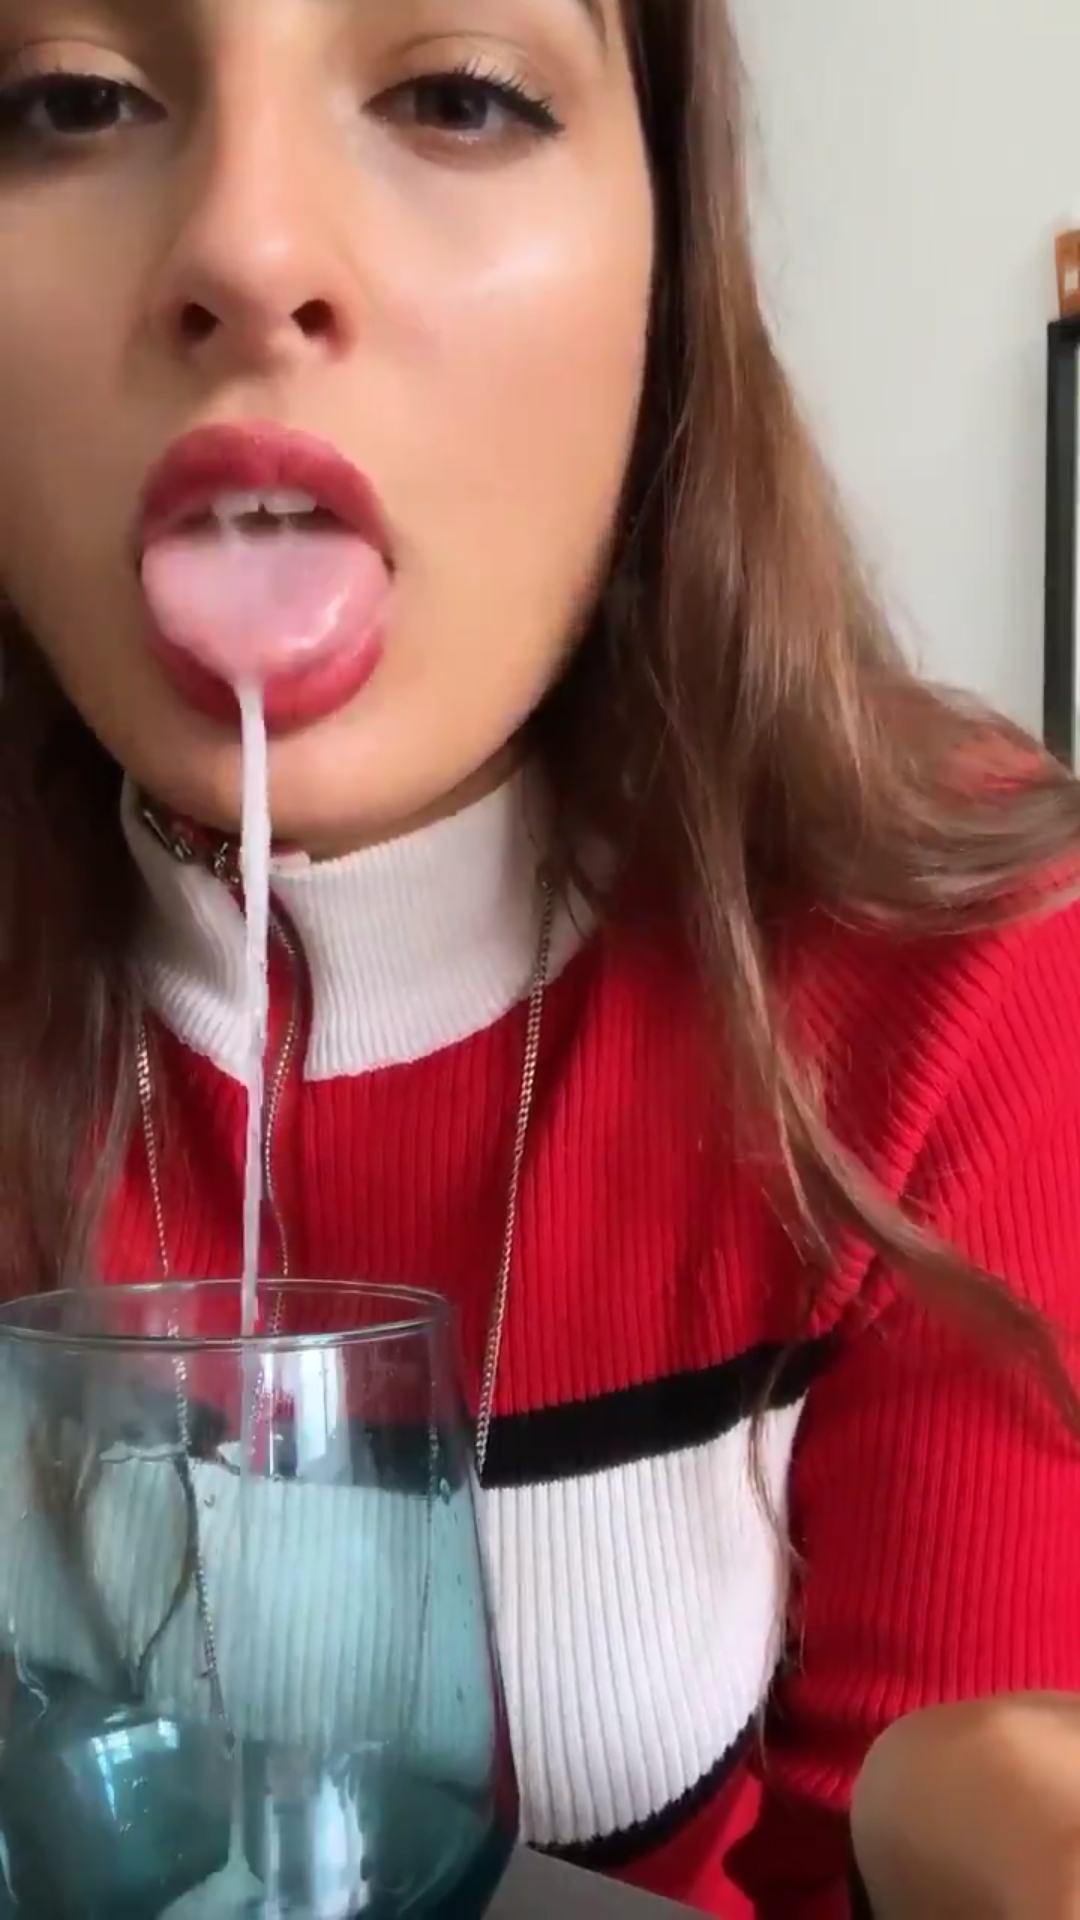 Spitting girl - video 41